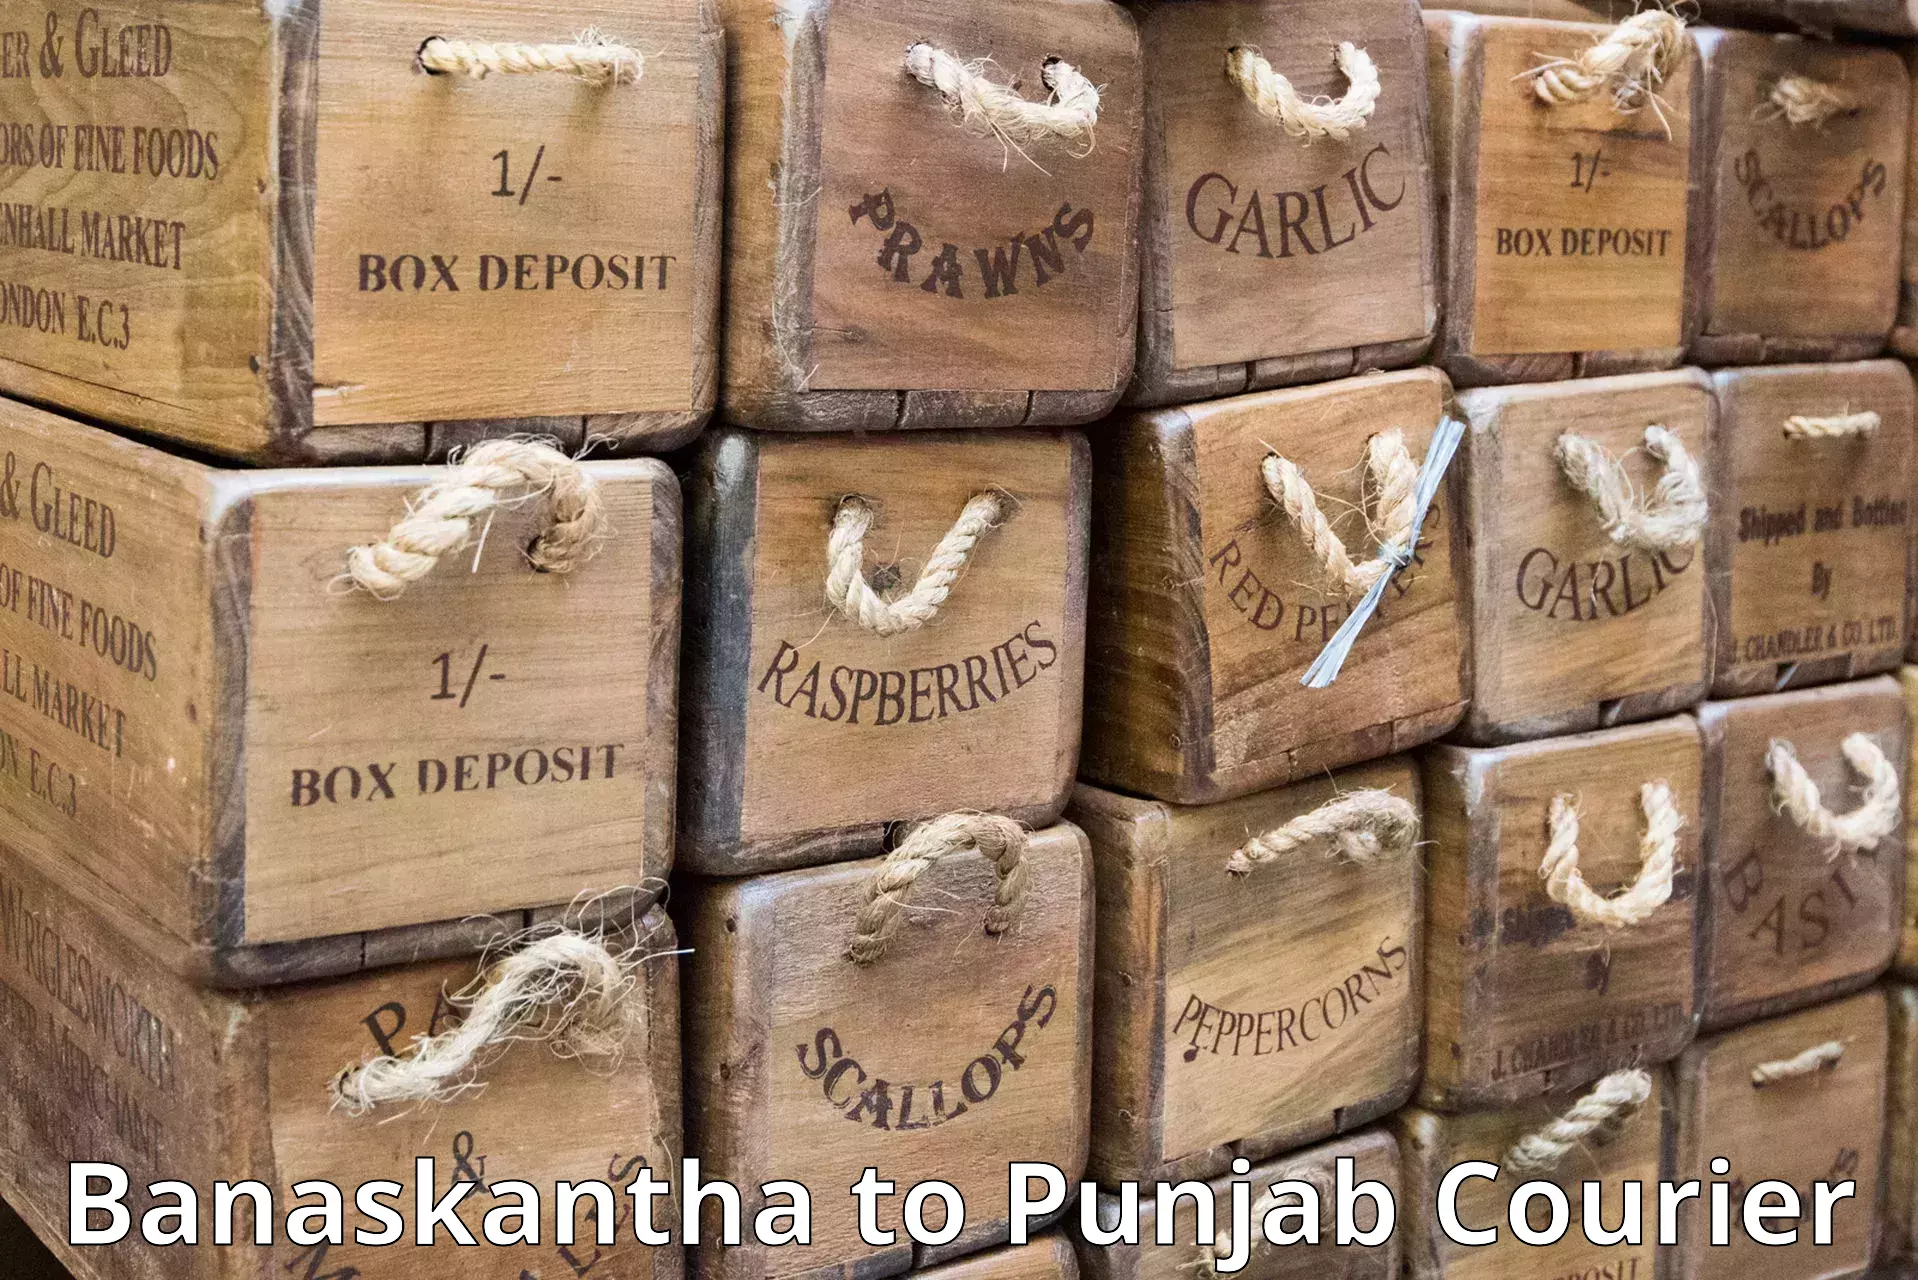 Courier service partnerships Banaskantha to Amritsar